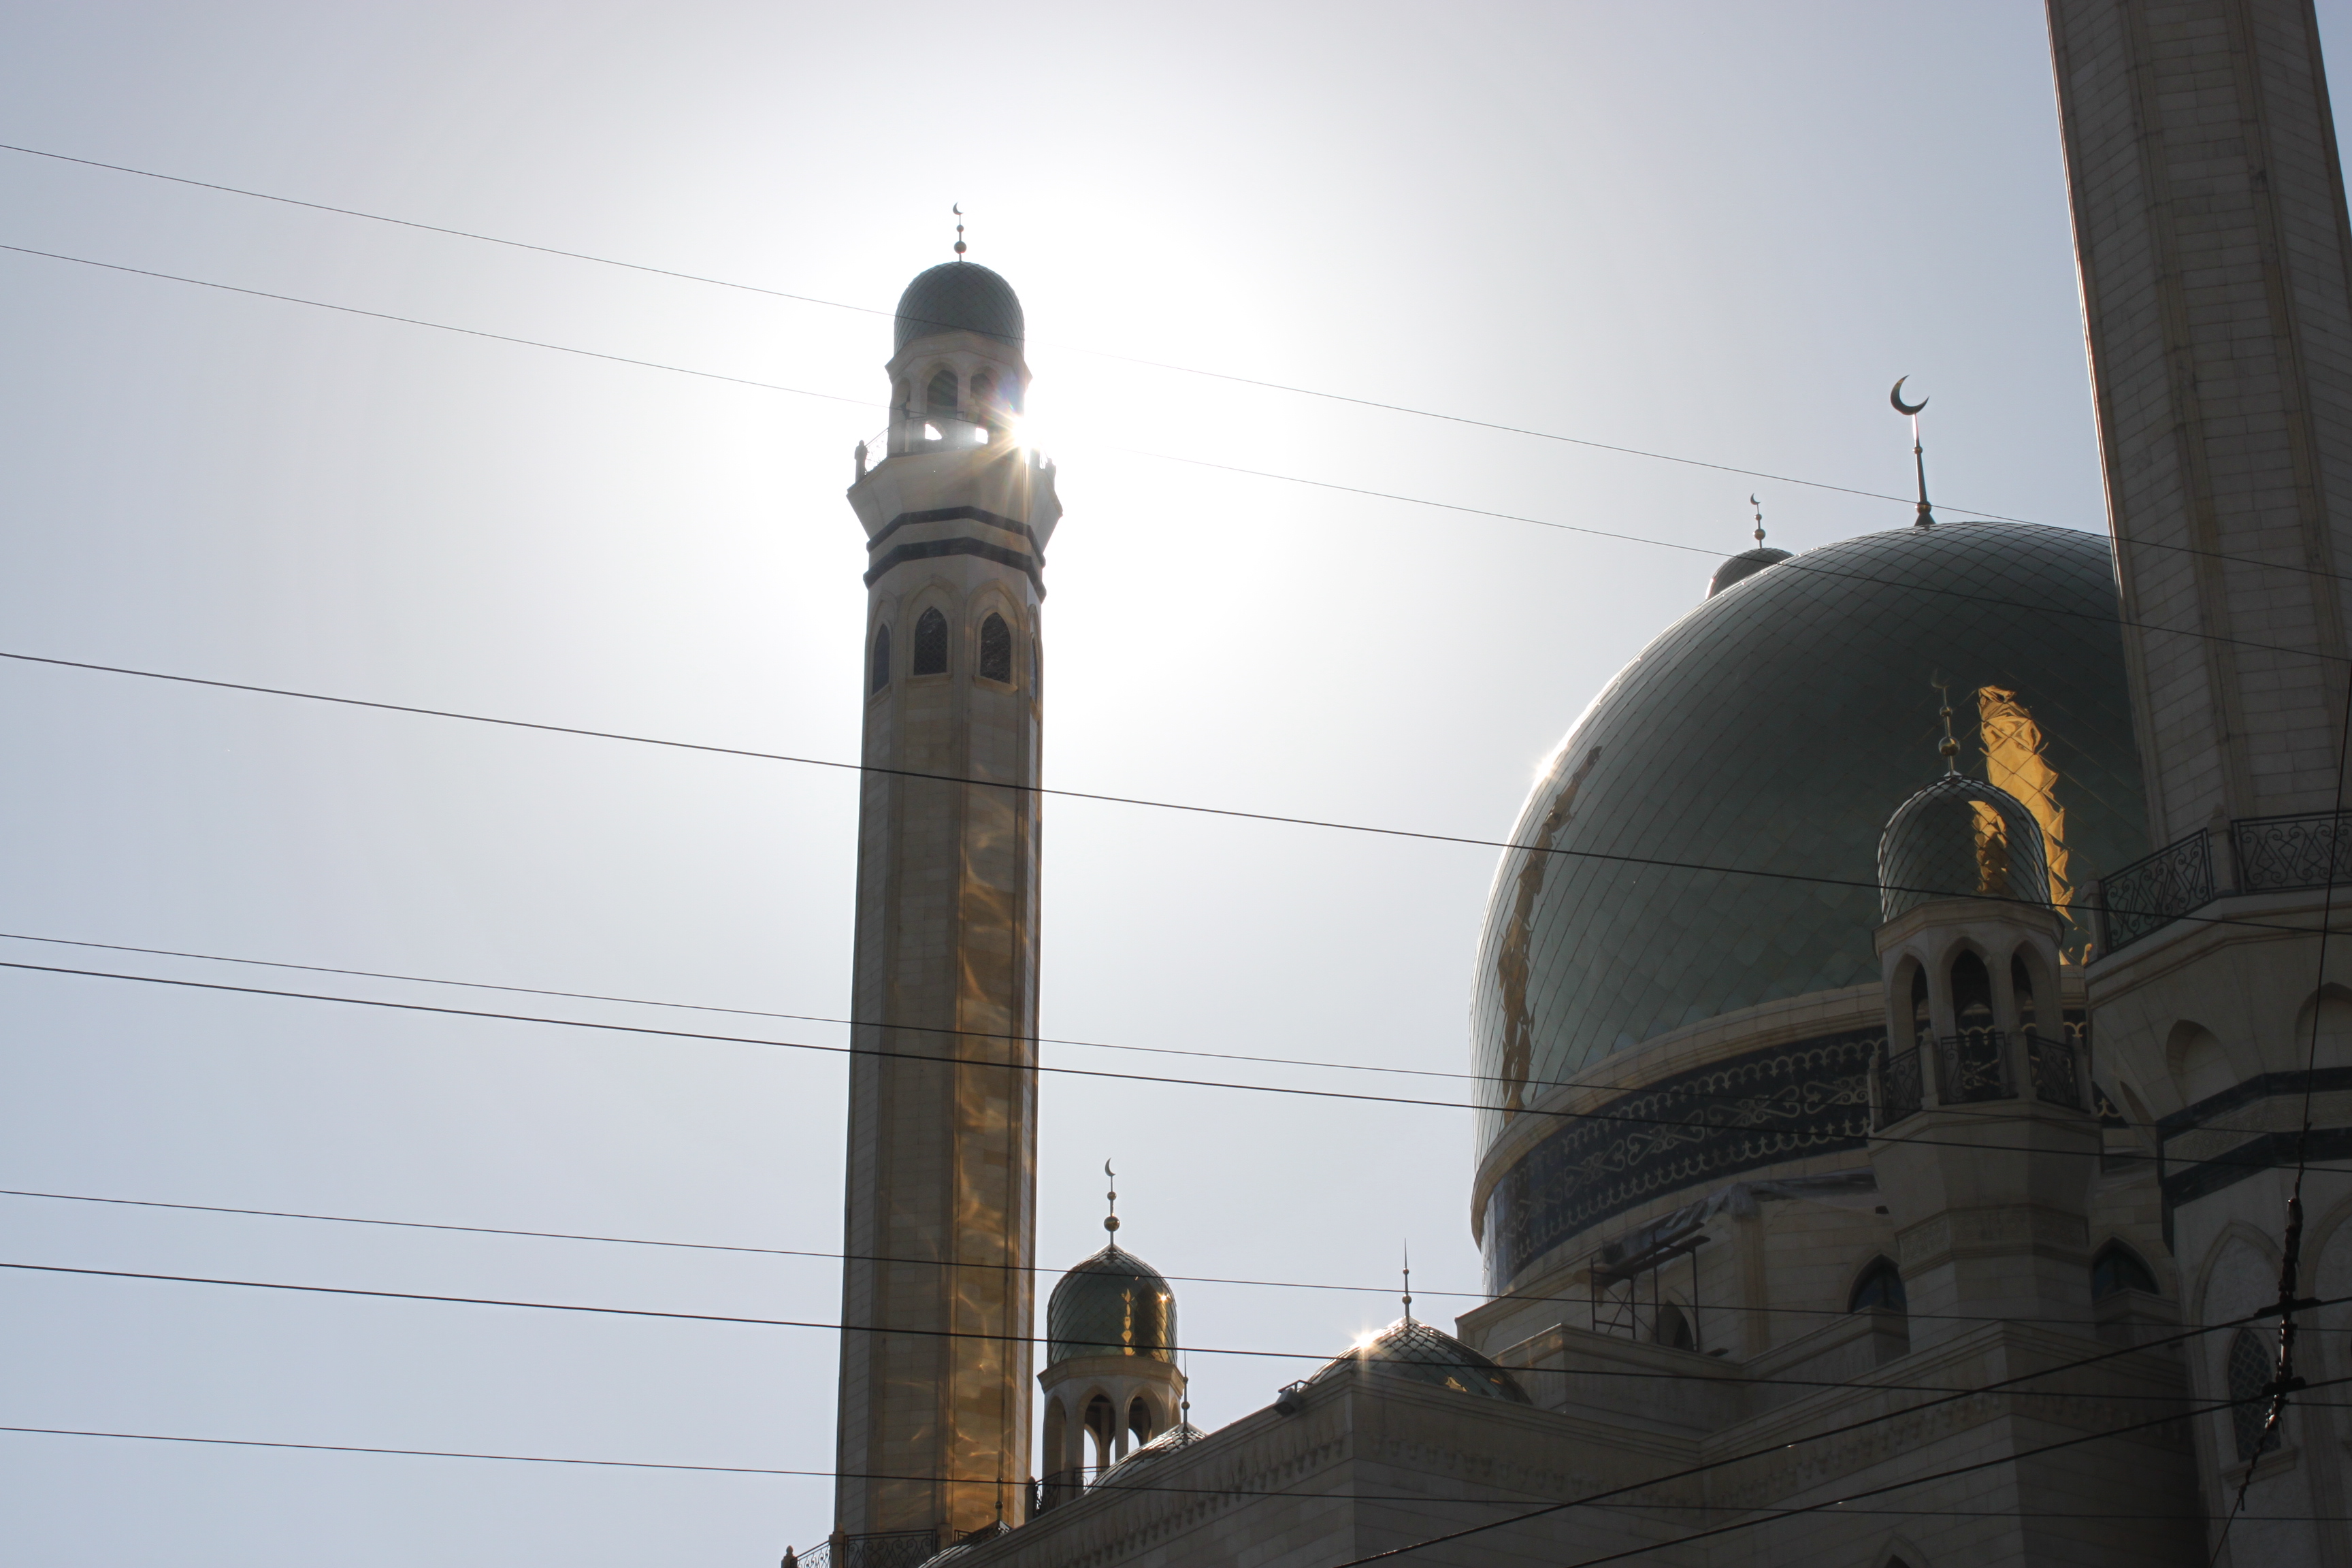 AUDAC звучит в мечети «Байкен» в Алматы